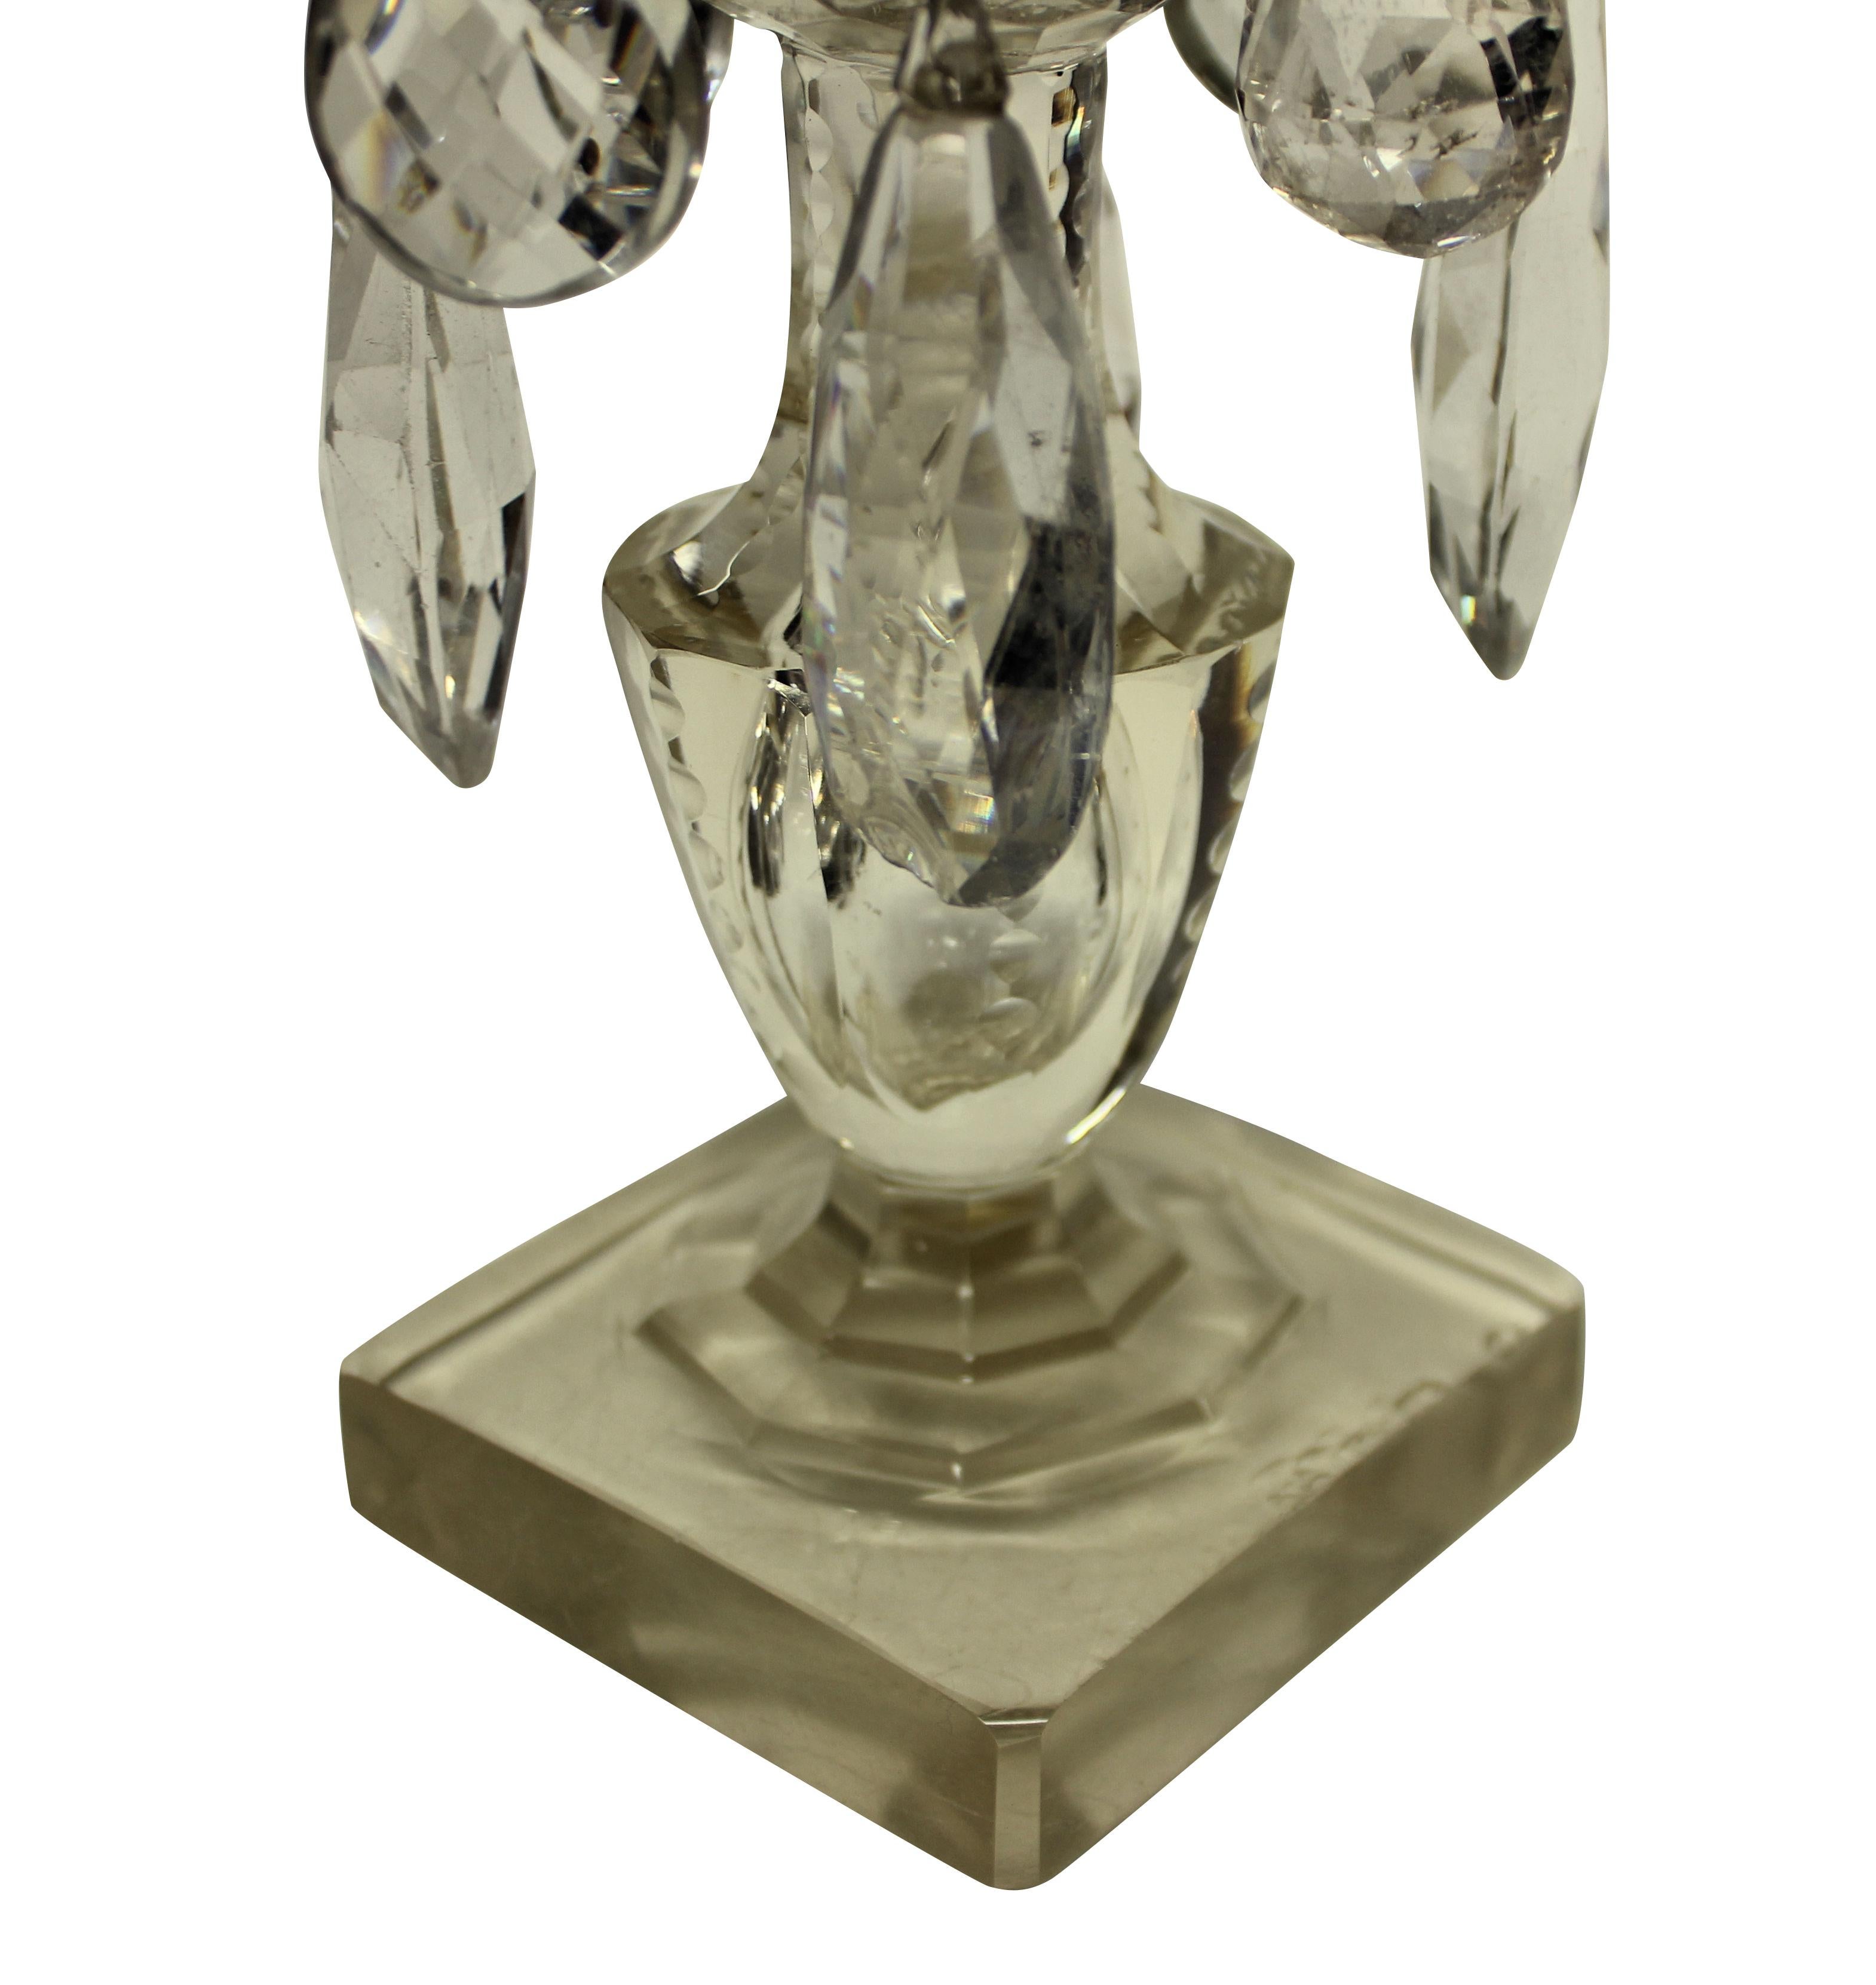 Une paire de chandeliers anglais en verre taillé. Les tiges principales dans un verre légèrement teinté de citron.